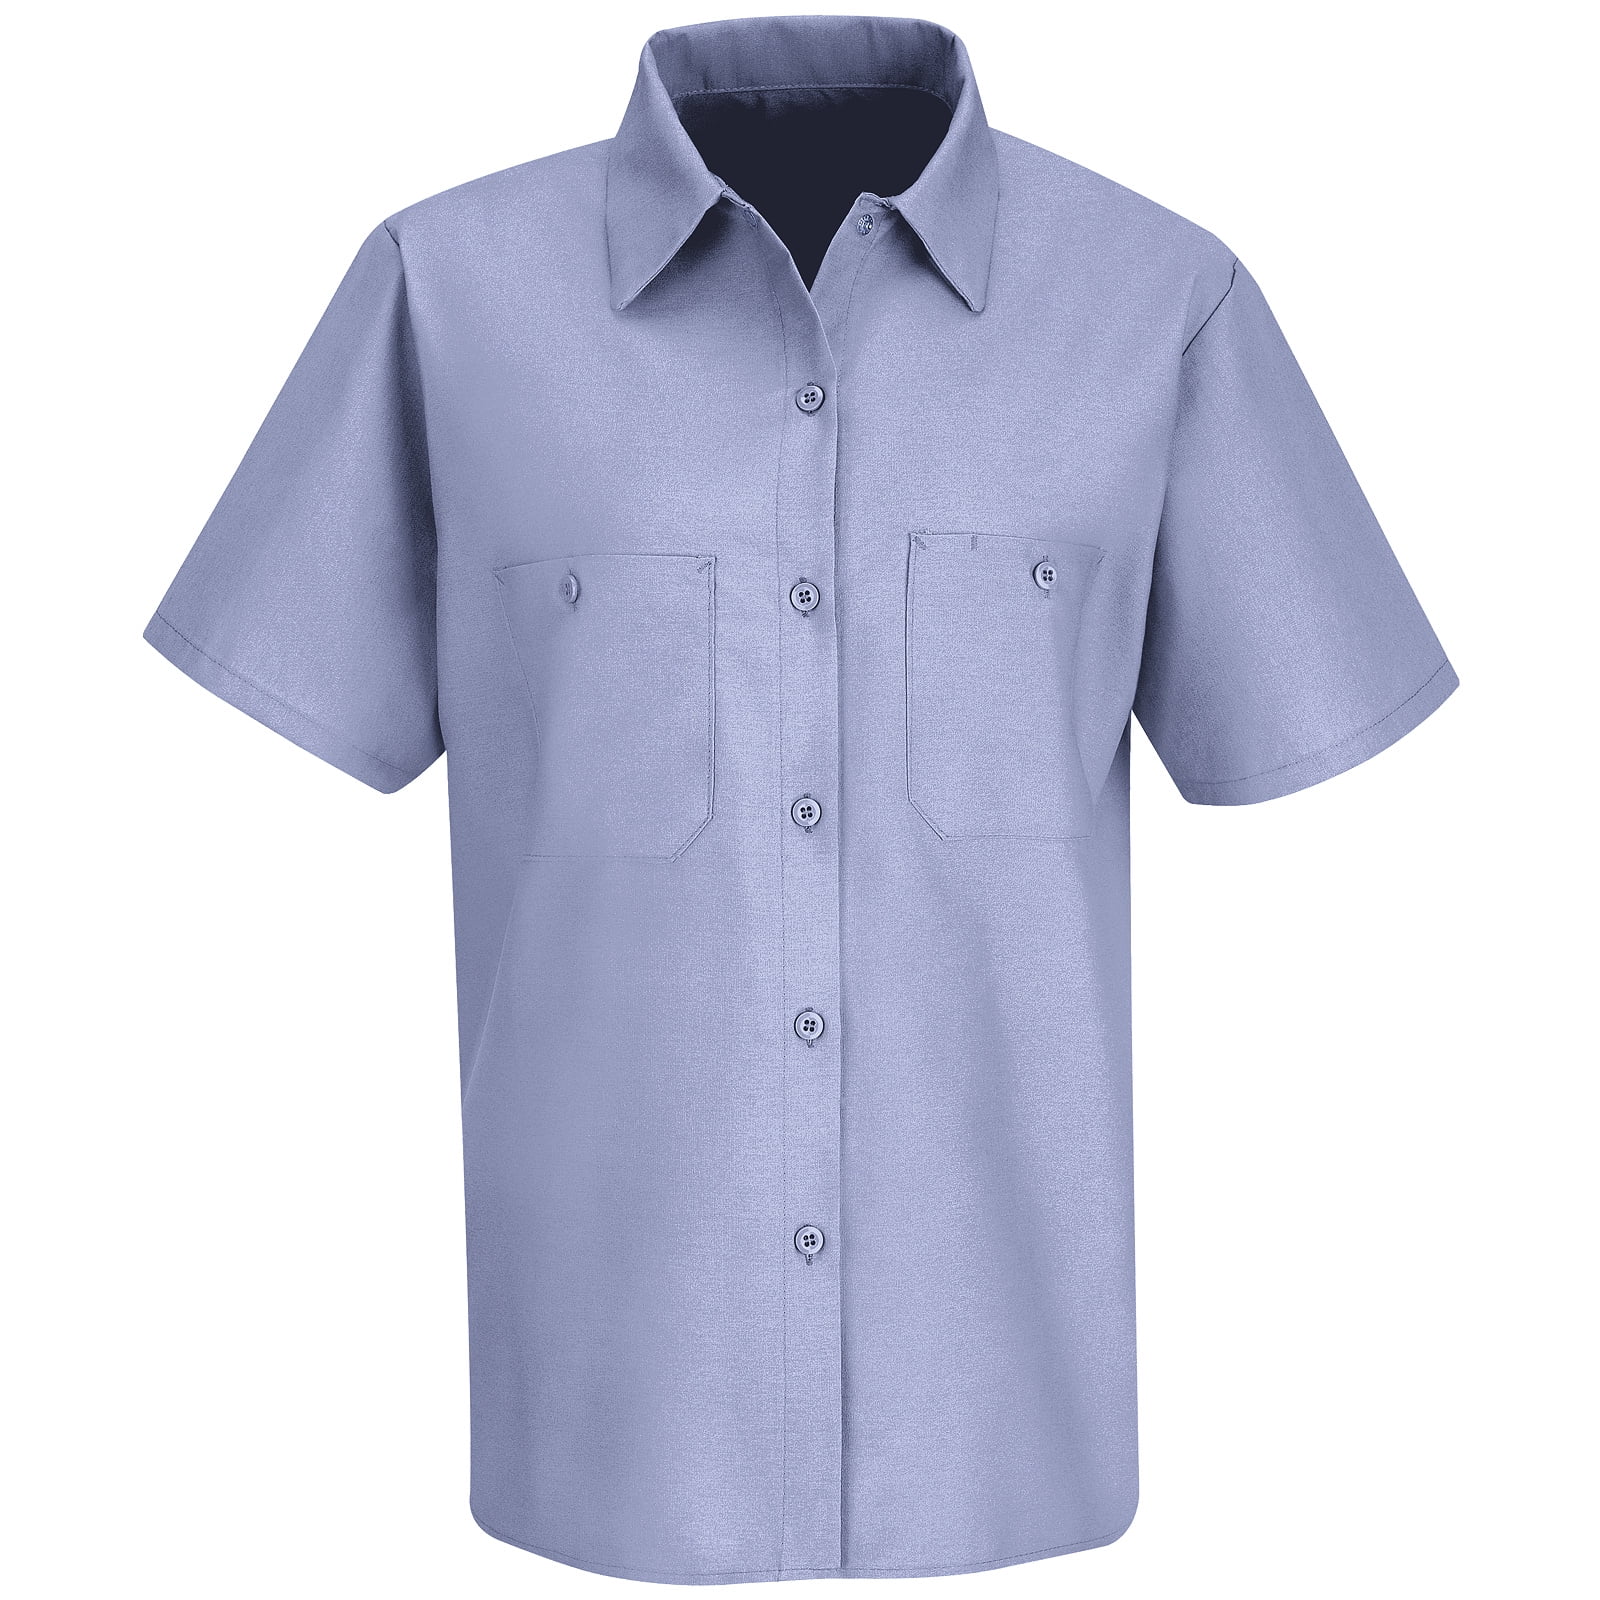 Women's Short Sleeve Industrial Work Shirt - Walmart.com